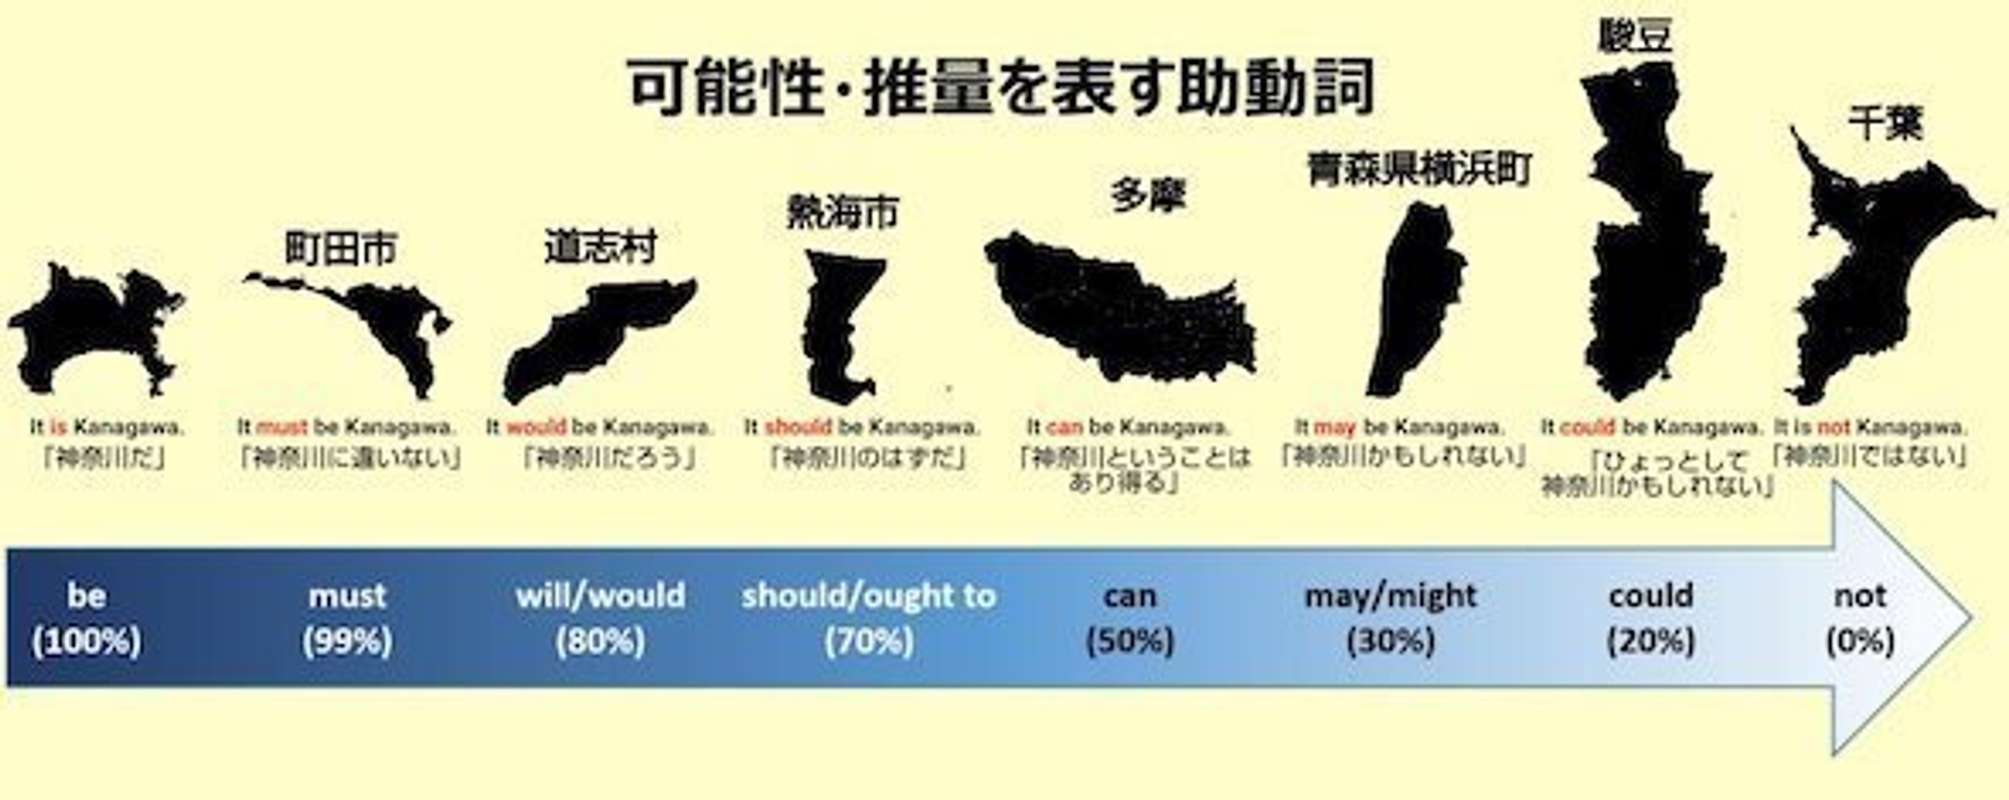 町田は Must Be Kanagawa 熱海は Should Be Kanagawa 神奈川と学ぶ英文法 に火種しかない 21年5月25日 エキサイトニュース